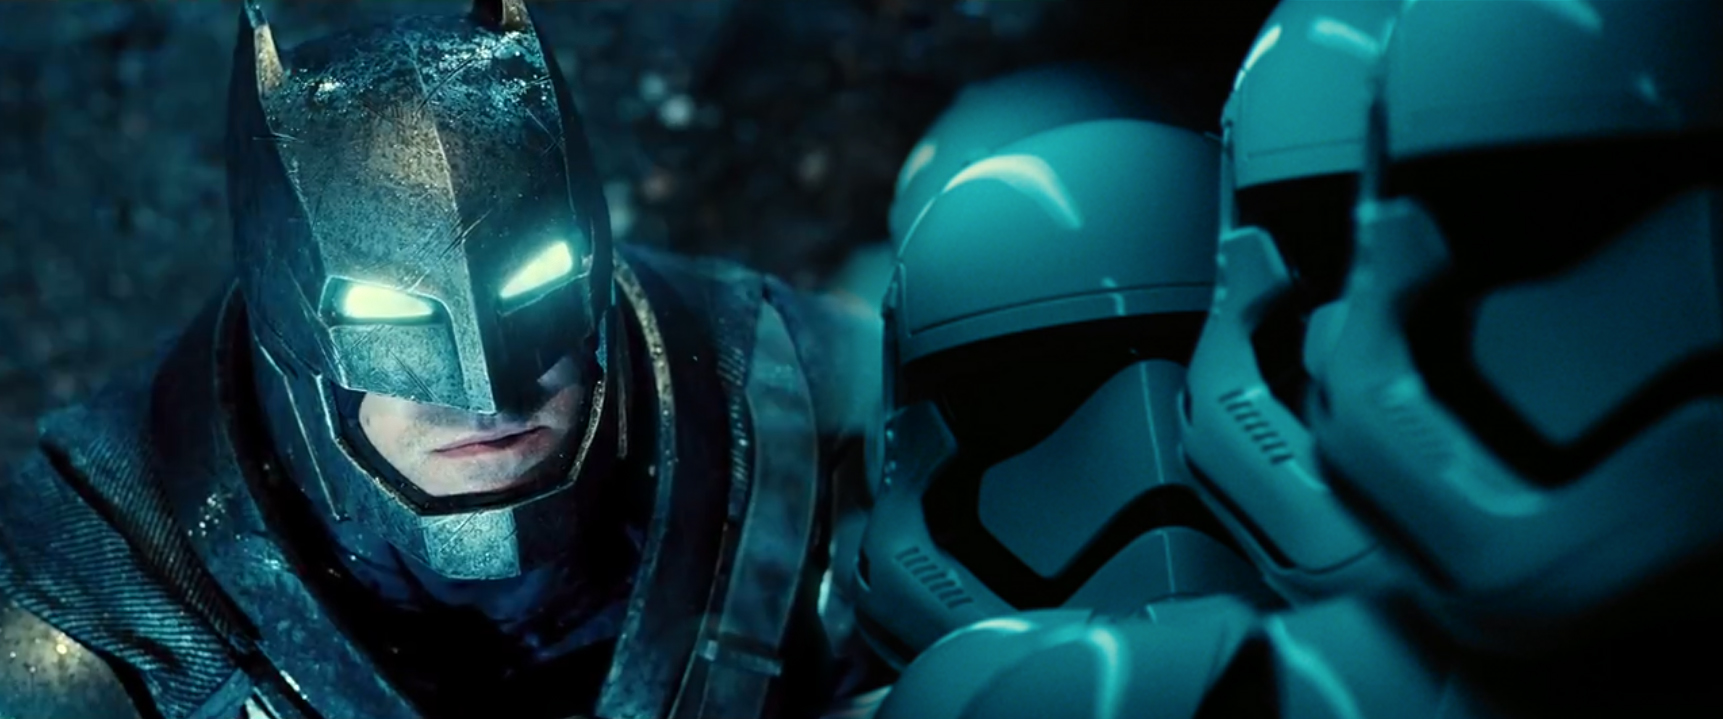 Star Wars und Batman V Superman: deutsche Trailer zeigen Synchronstimmen